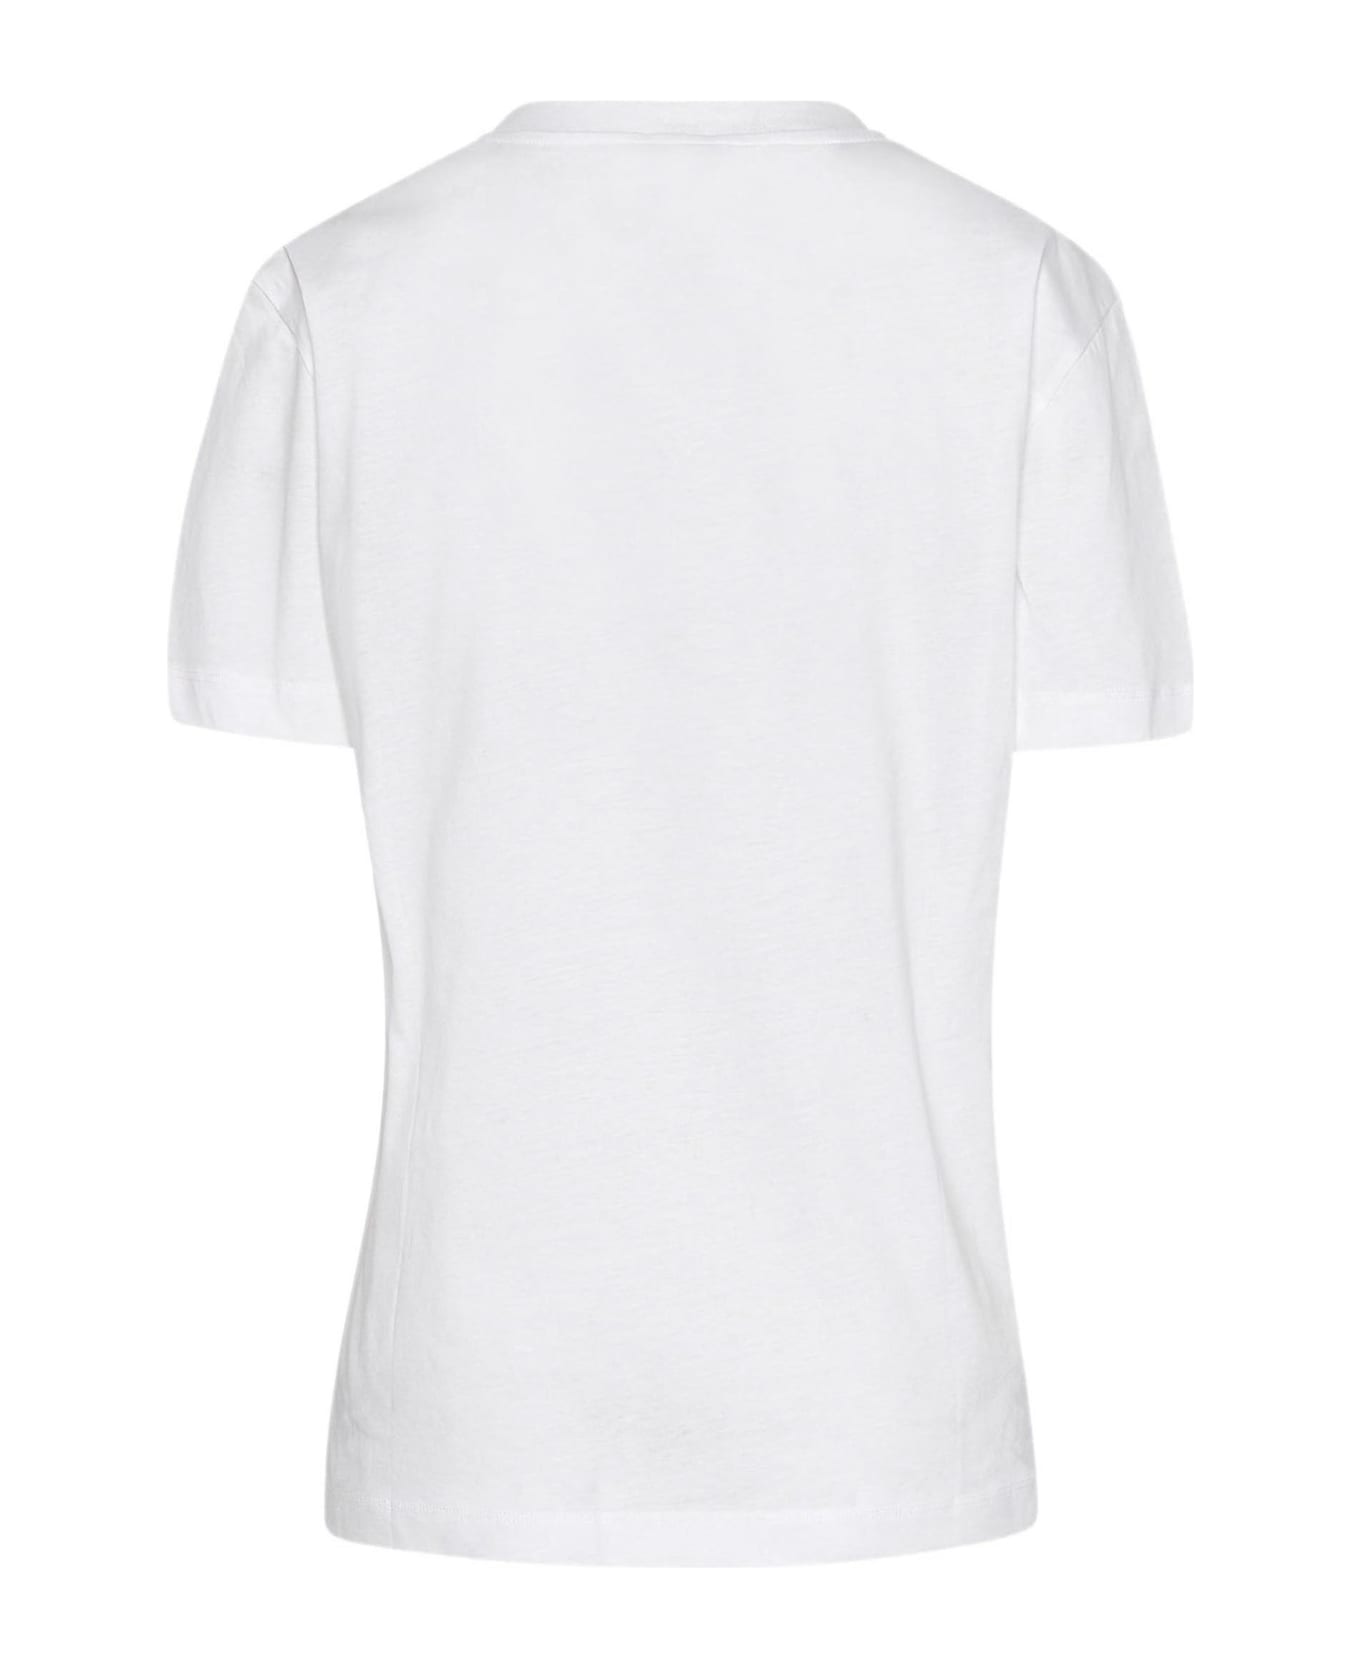 Patou White Organic Cotton T-shirt - White Tシャツ